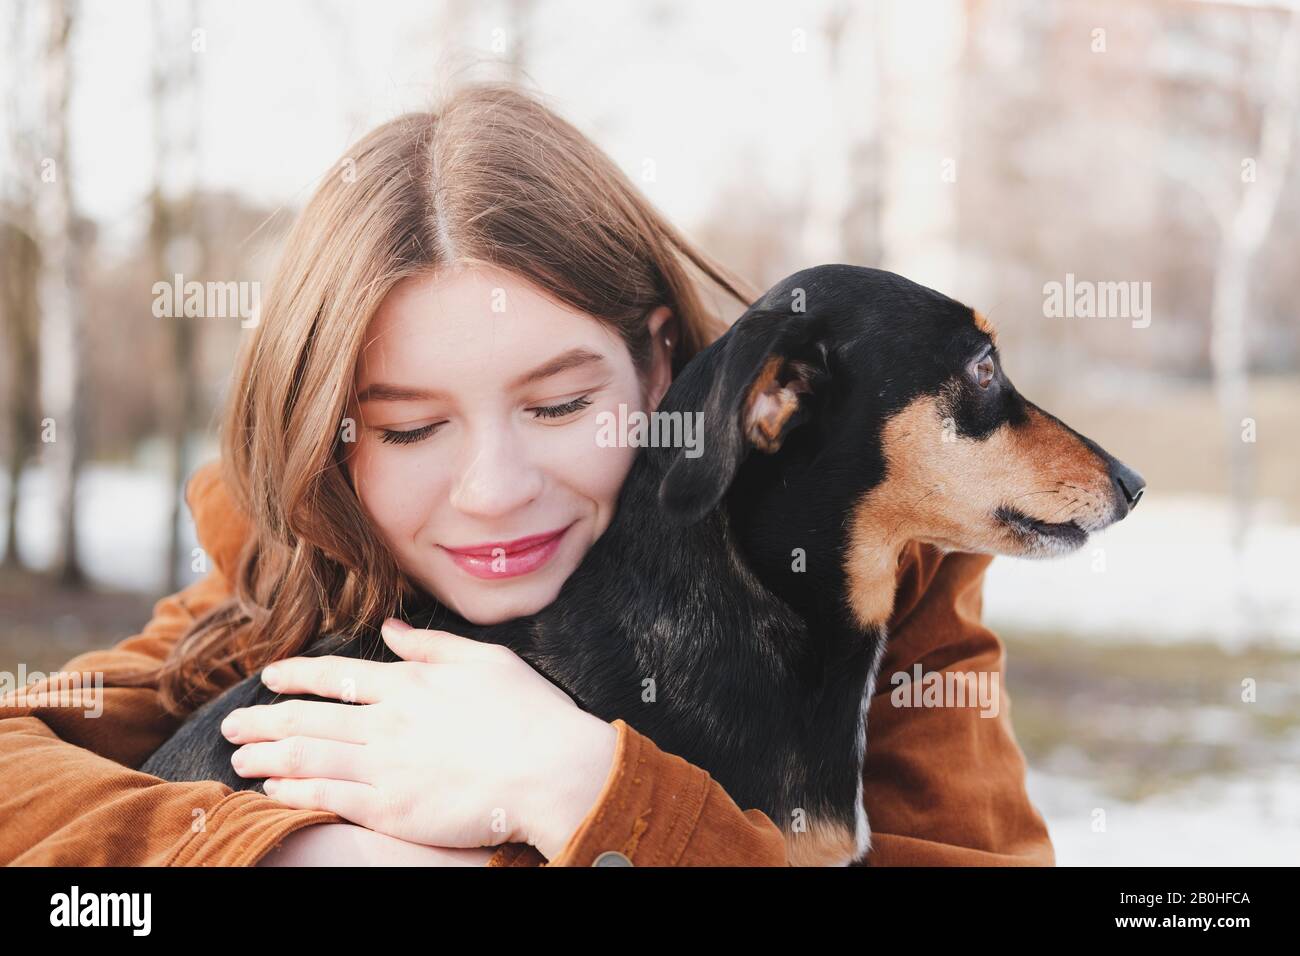 Der Mensch ist glücklich mit einem Hund. Konzept für liebevolle Haustiere: Glückliche junge Frau umarmt ihren Dachshund bei einem Spaziergang Stockfoto